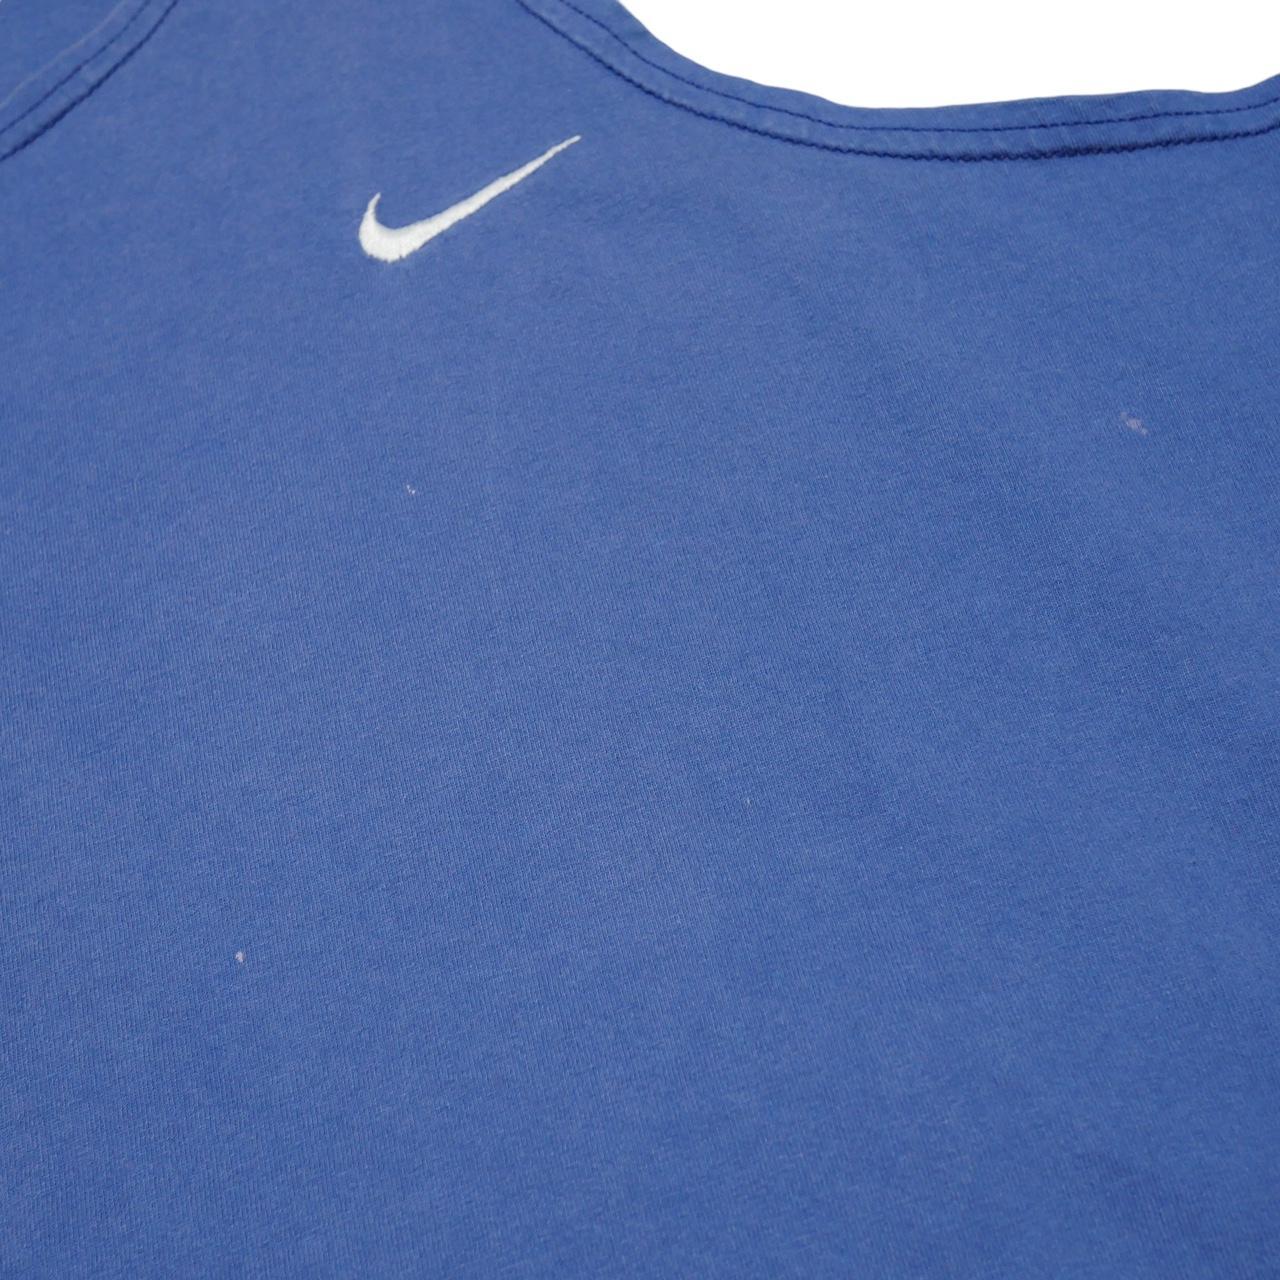 Nike Men's Blue and White Vest (4)